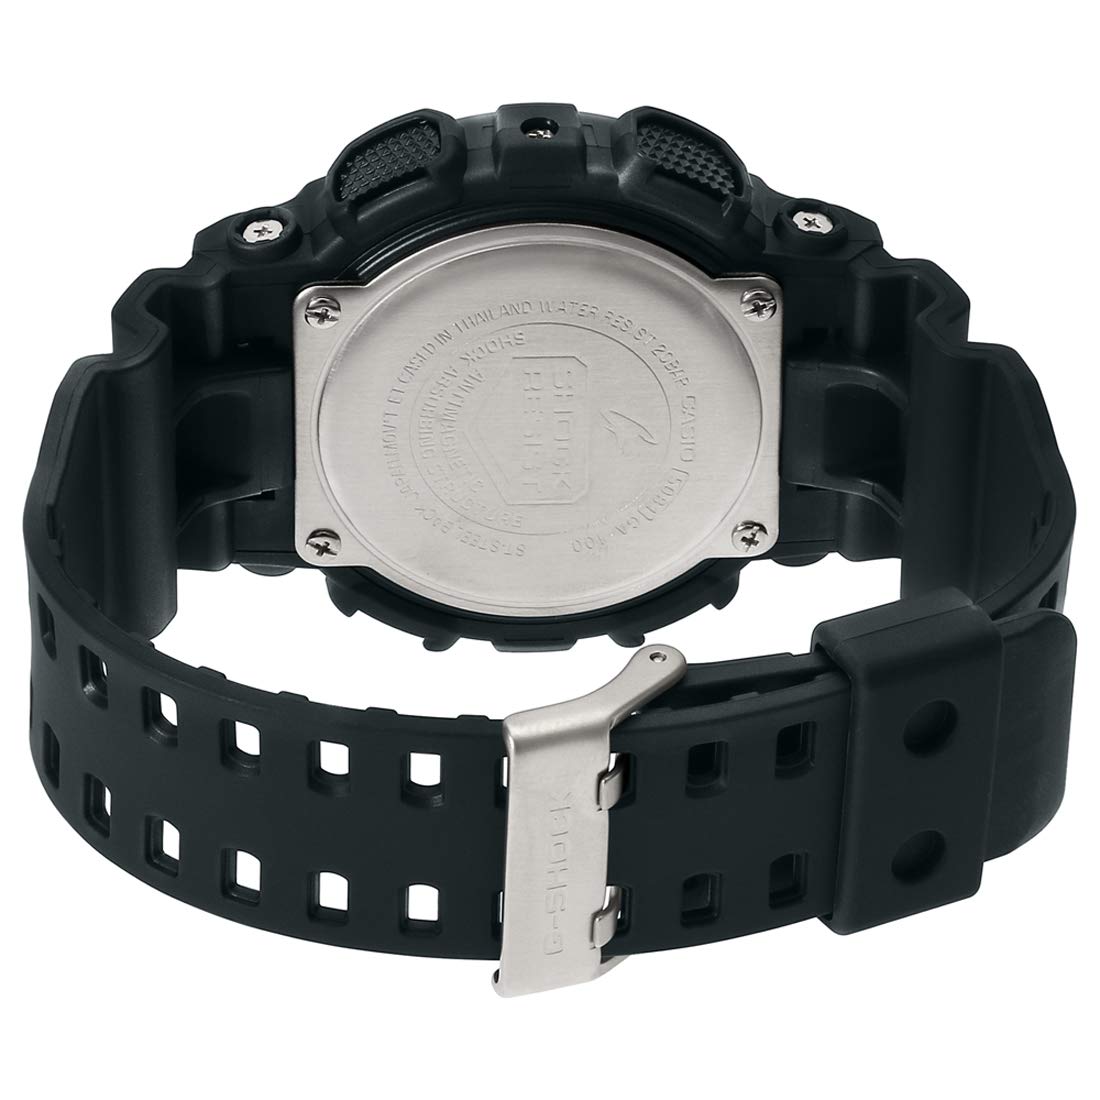 Casio Watch G SHOCK 100 Black